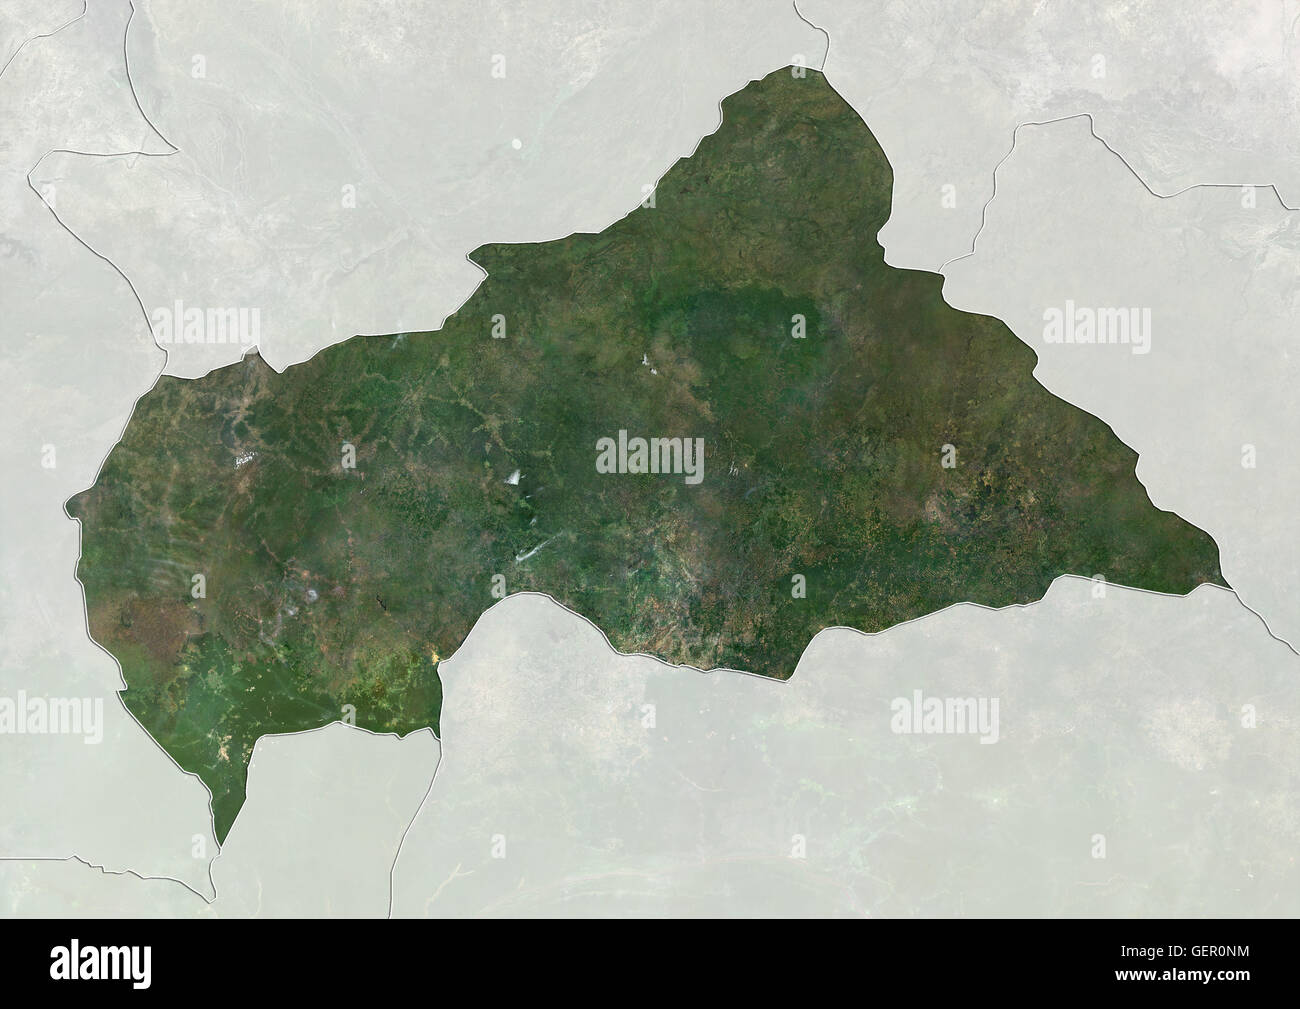 Satellitenansicht der Zentralafrikanischen Republik (mit Ländergrenzen und Maske). Dieses Bild wurde aus Daten von Landsat-Satelliten erworben erstellt. Stockfoto